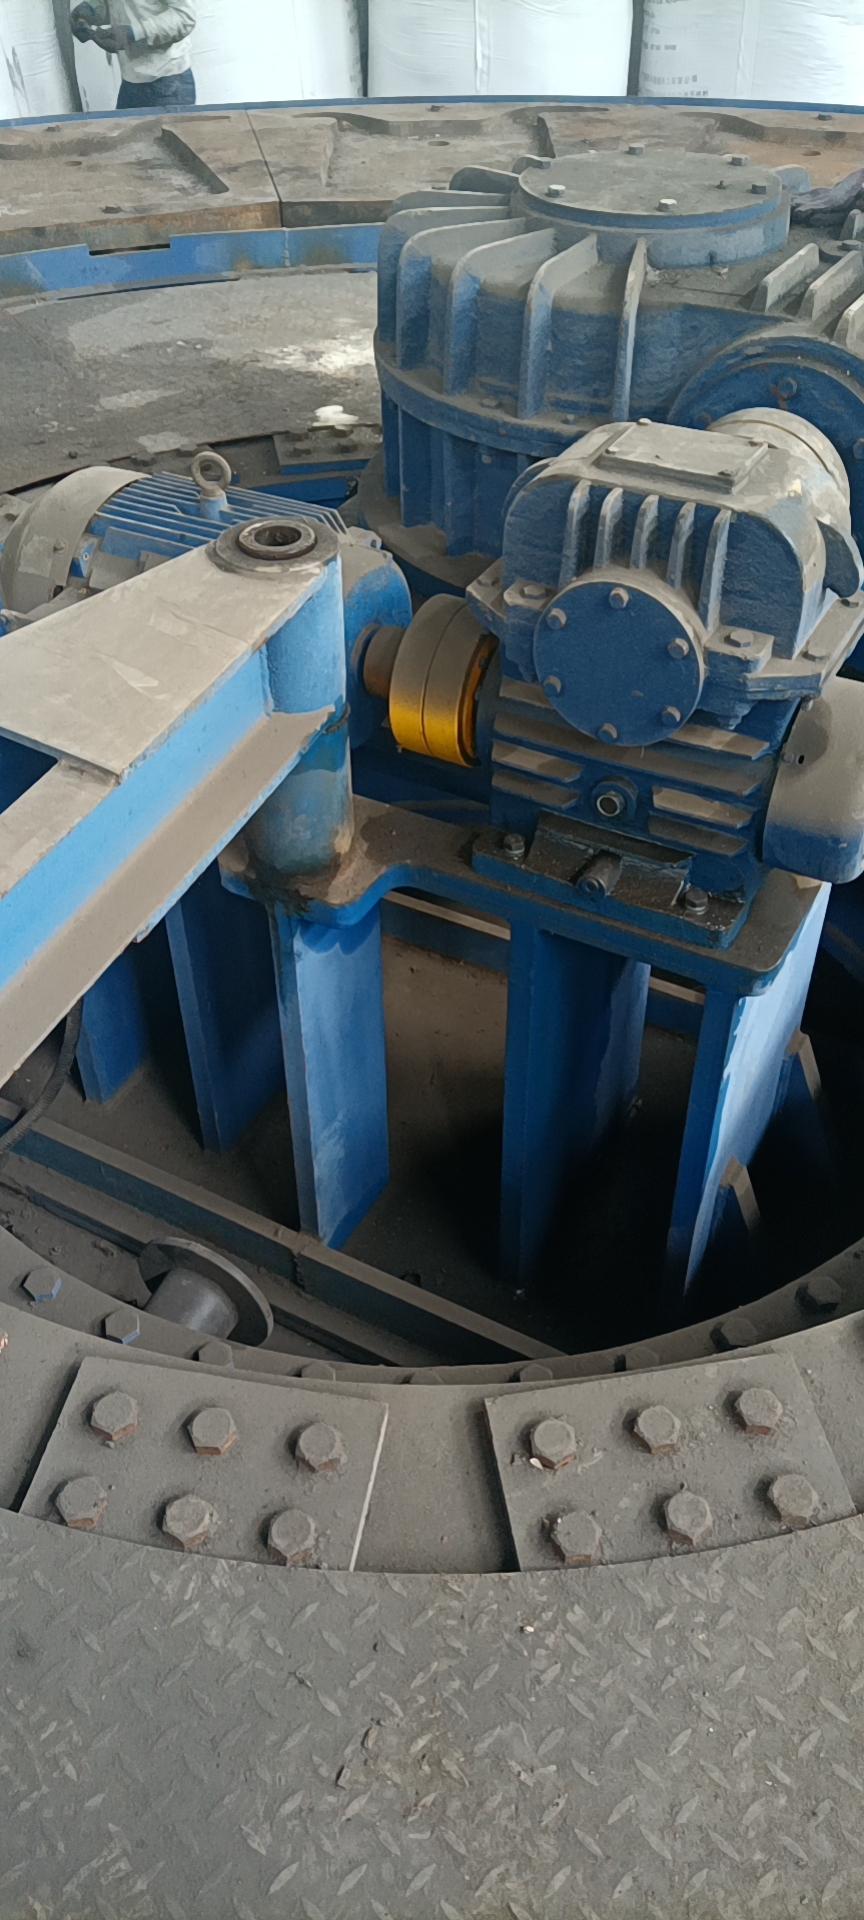  鉛陽極鋳造機連続鋳造機の電解システム 